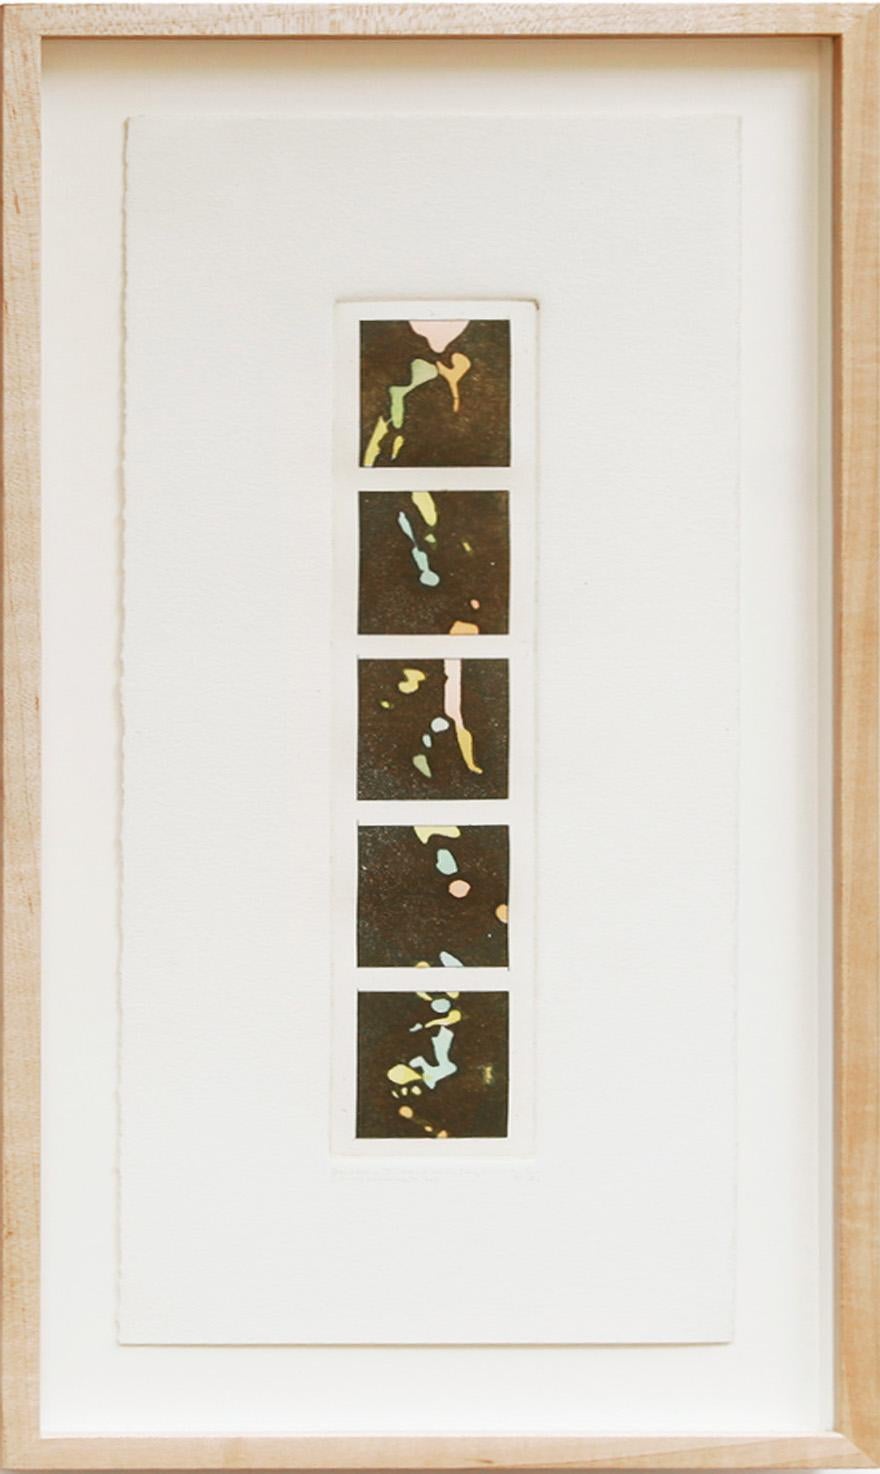 Tom Phillips Abstract Print - Autour de Paul Cezanne